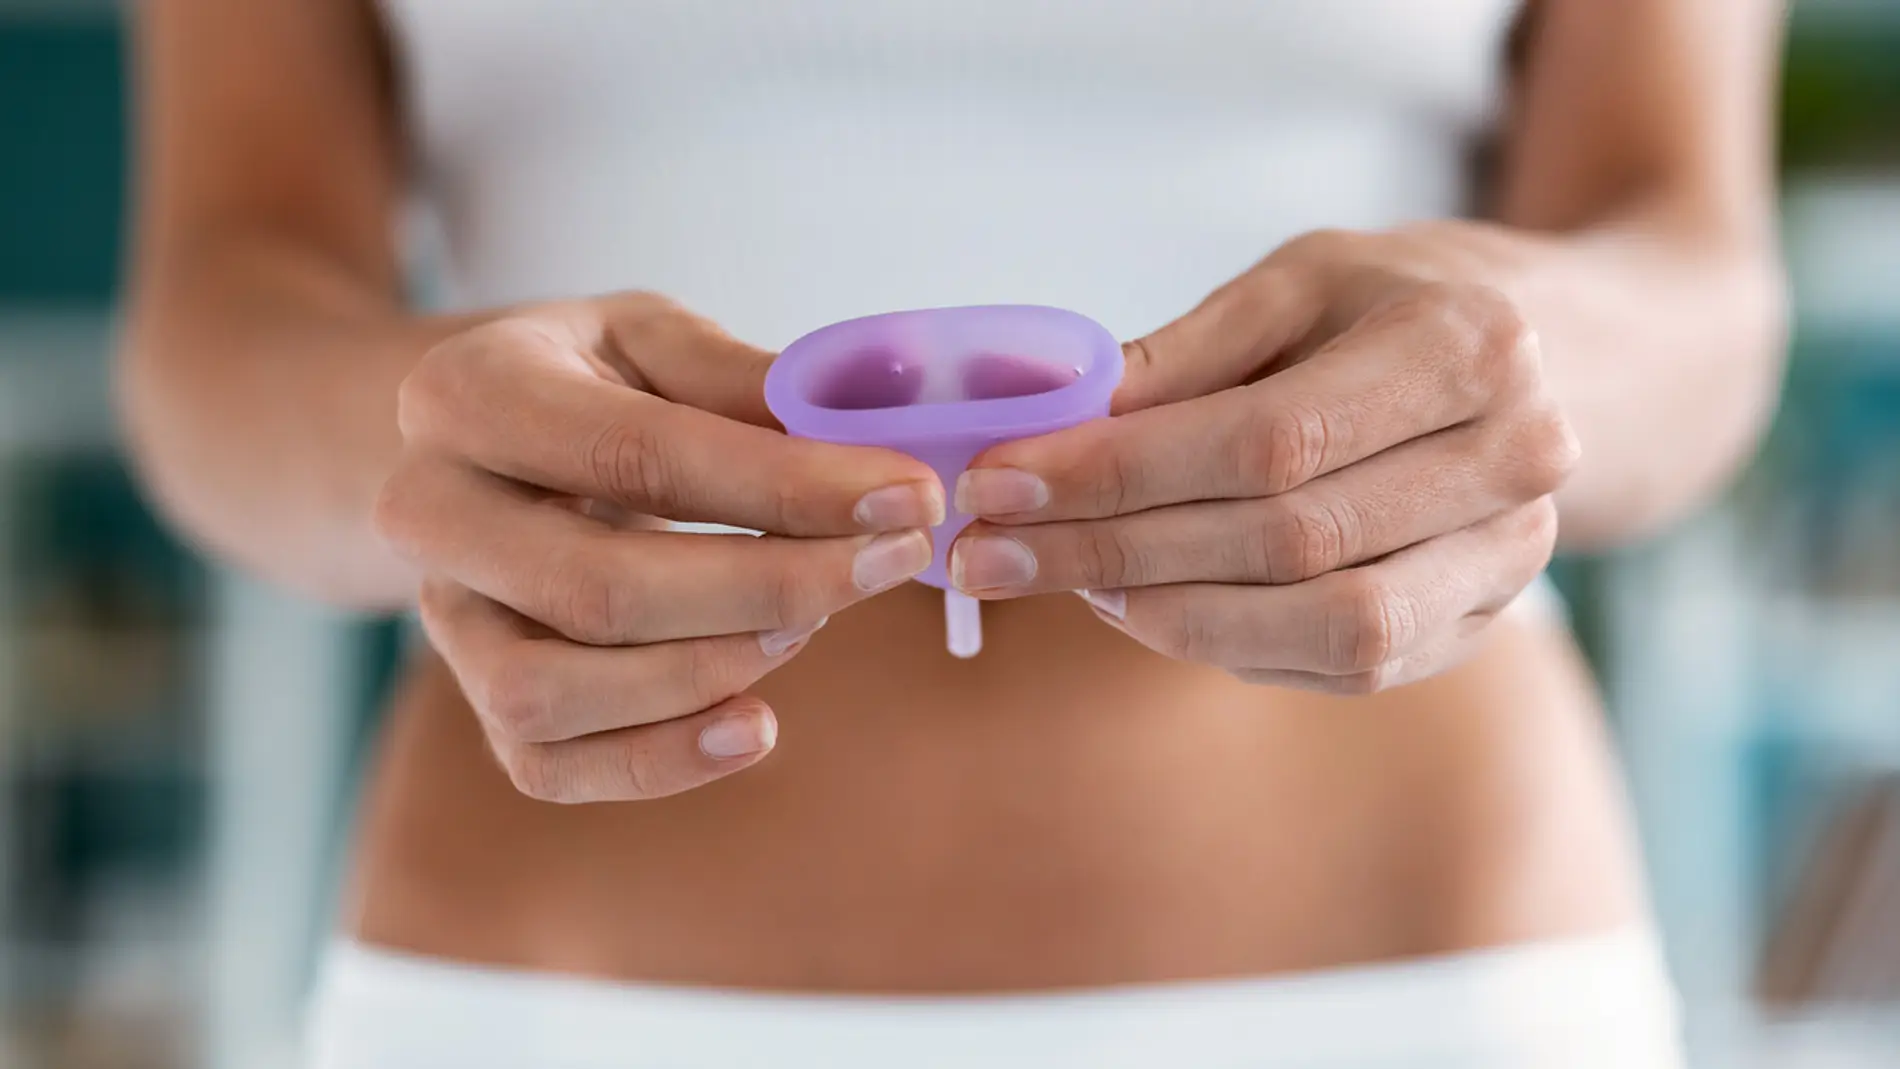  Cuatro razones para utilizar copa menstrual en verano